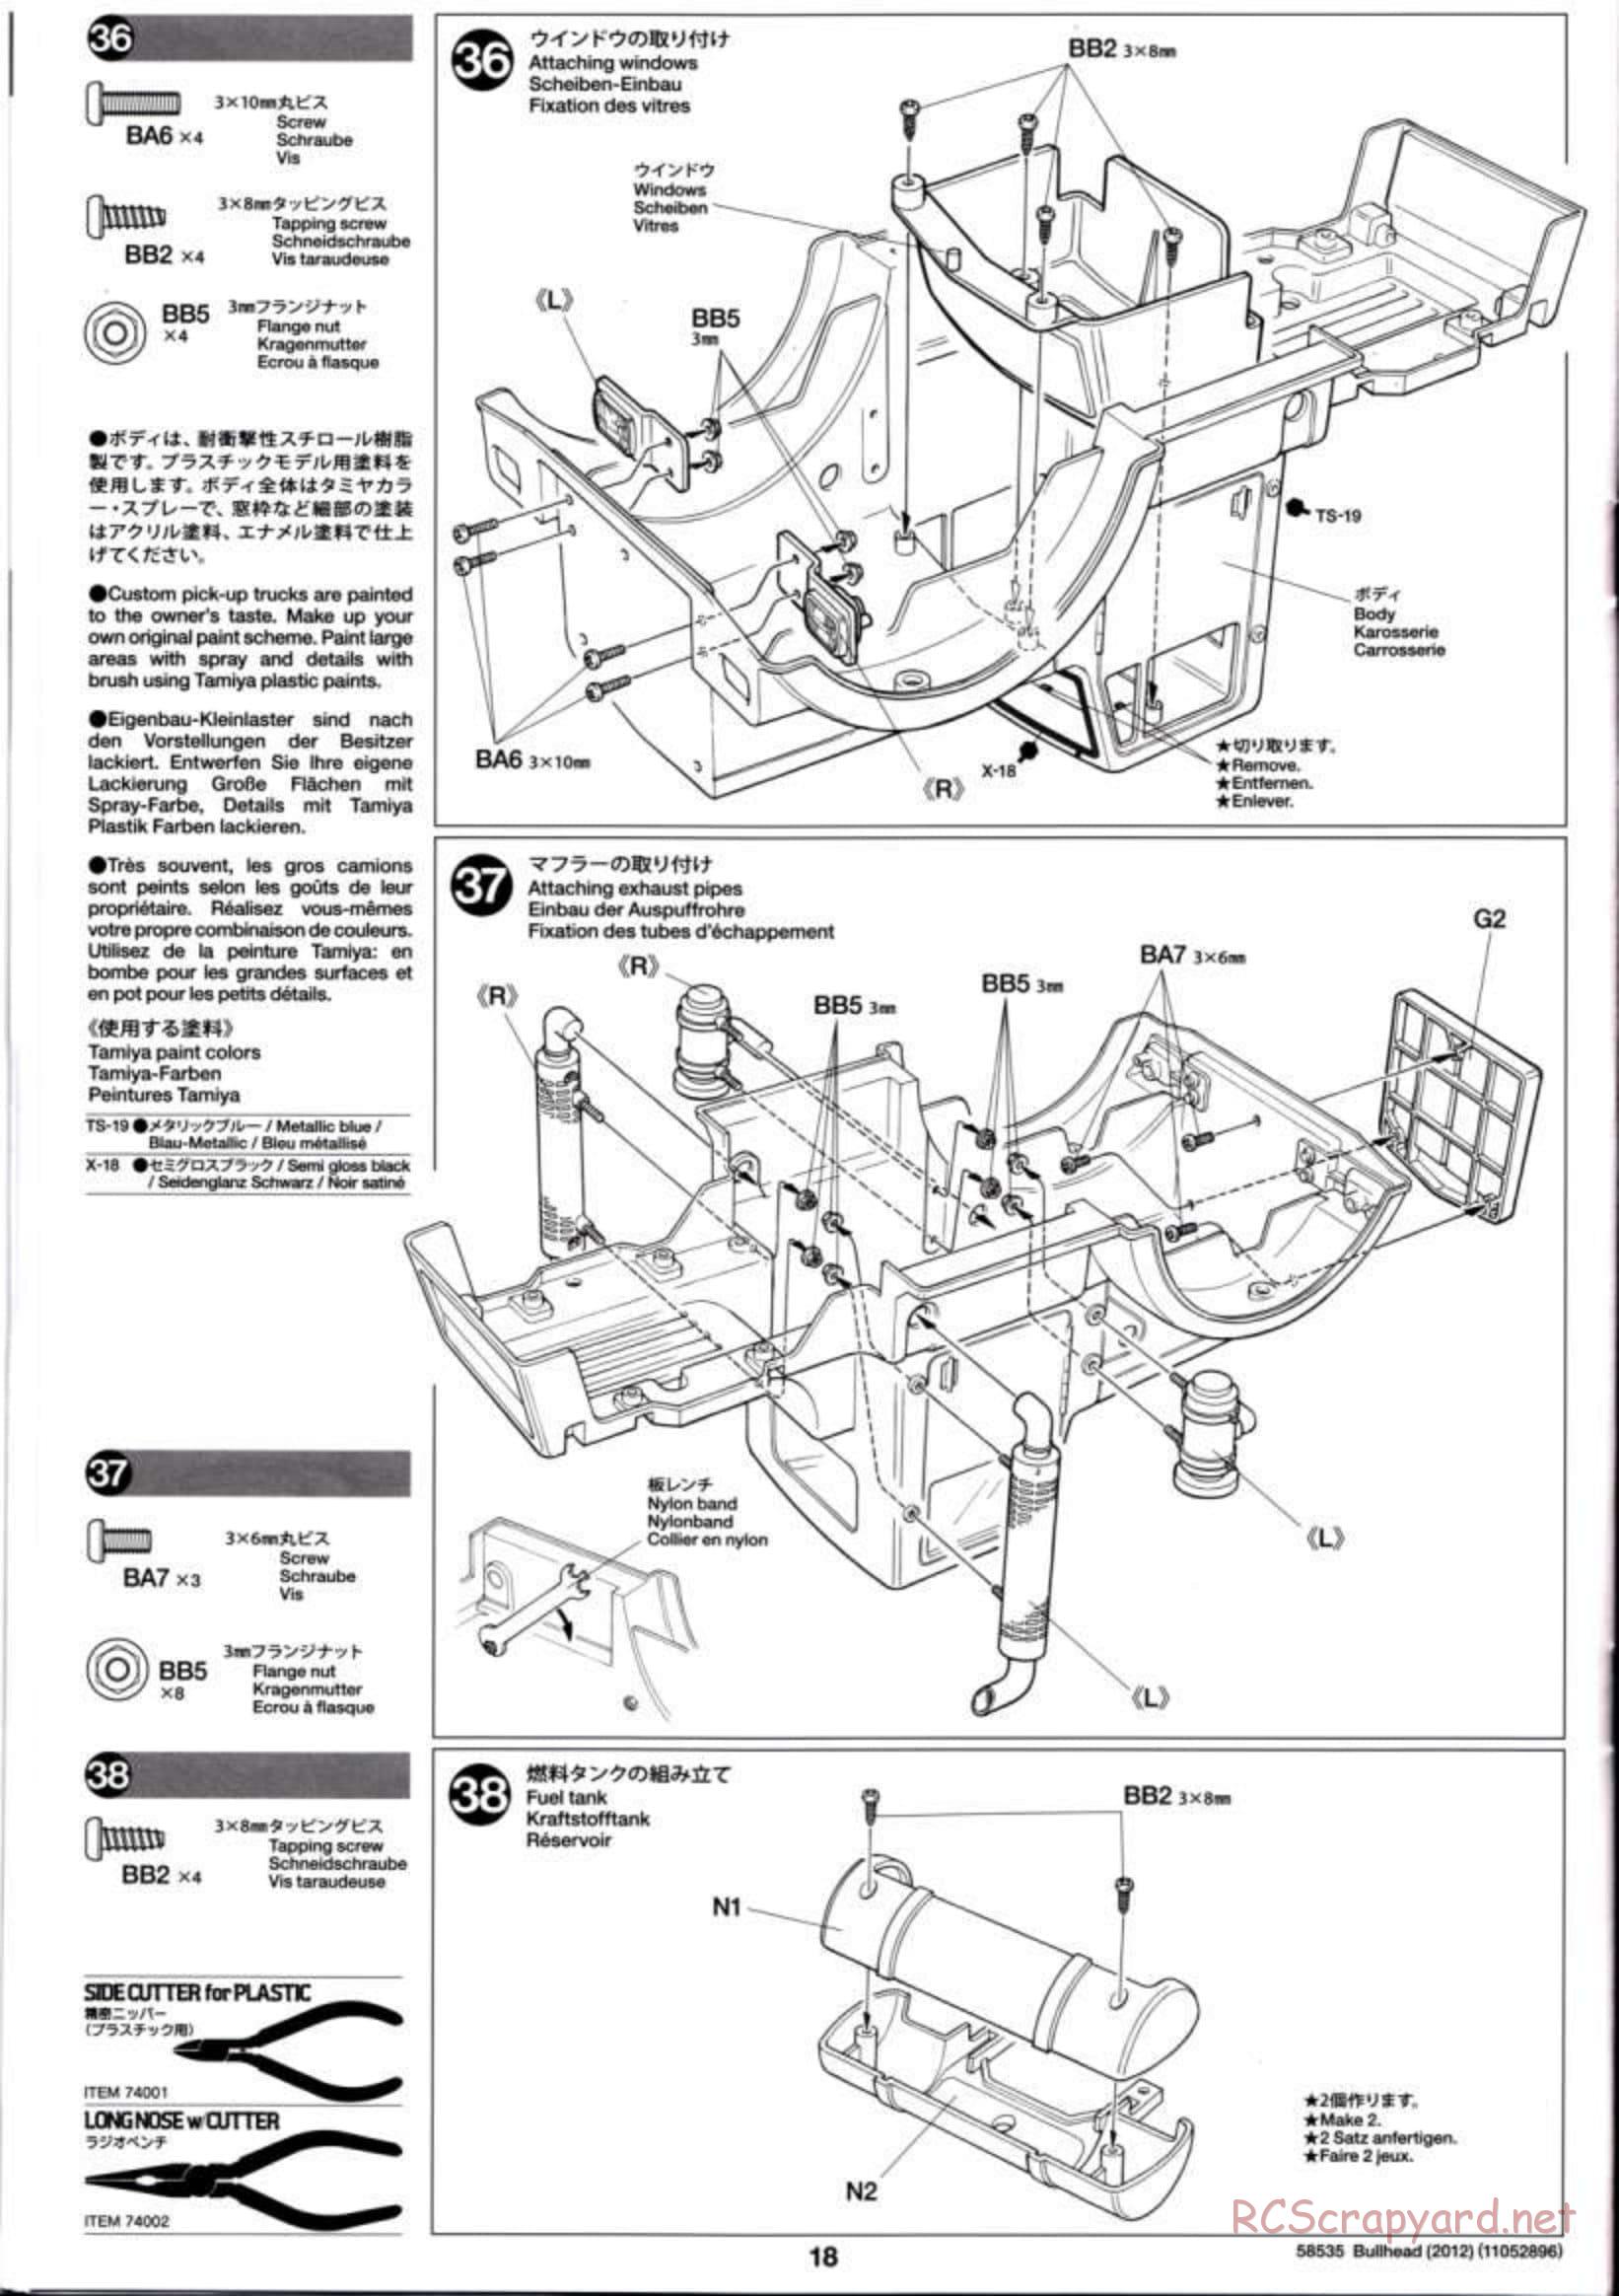 Tamiya - Bullhead 2012 - CB Chassis - Manual - Page 18